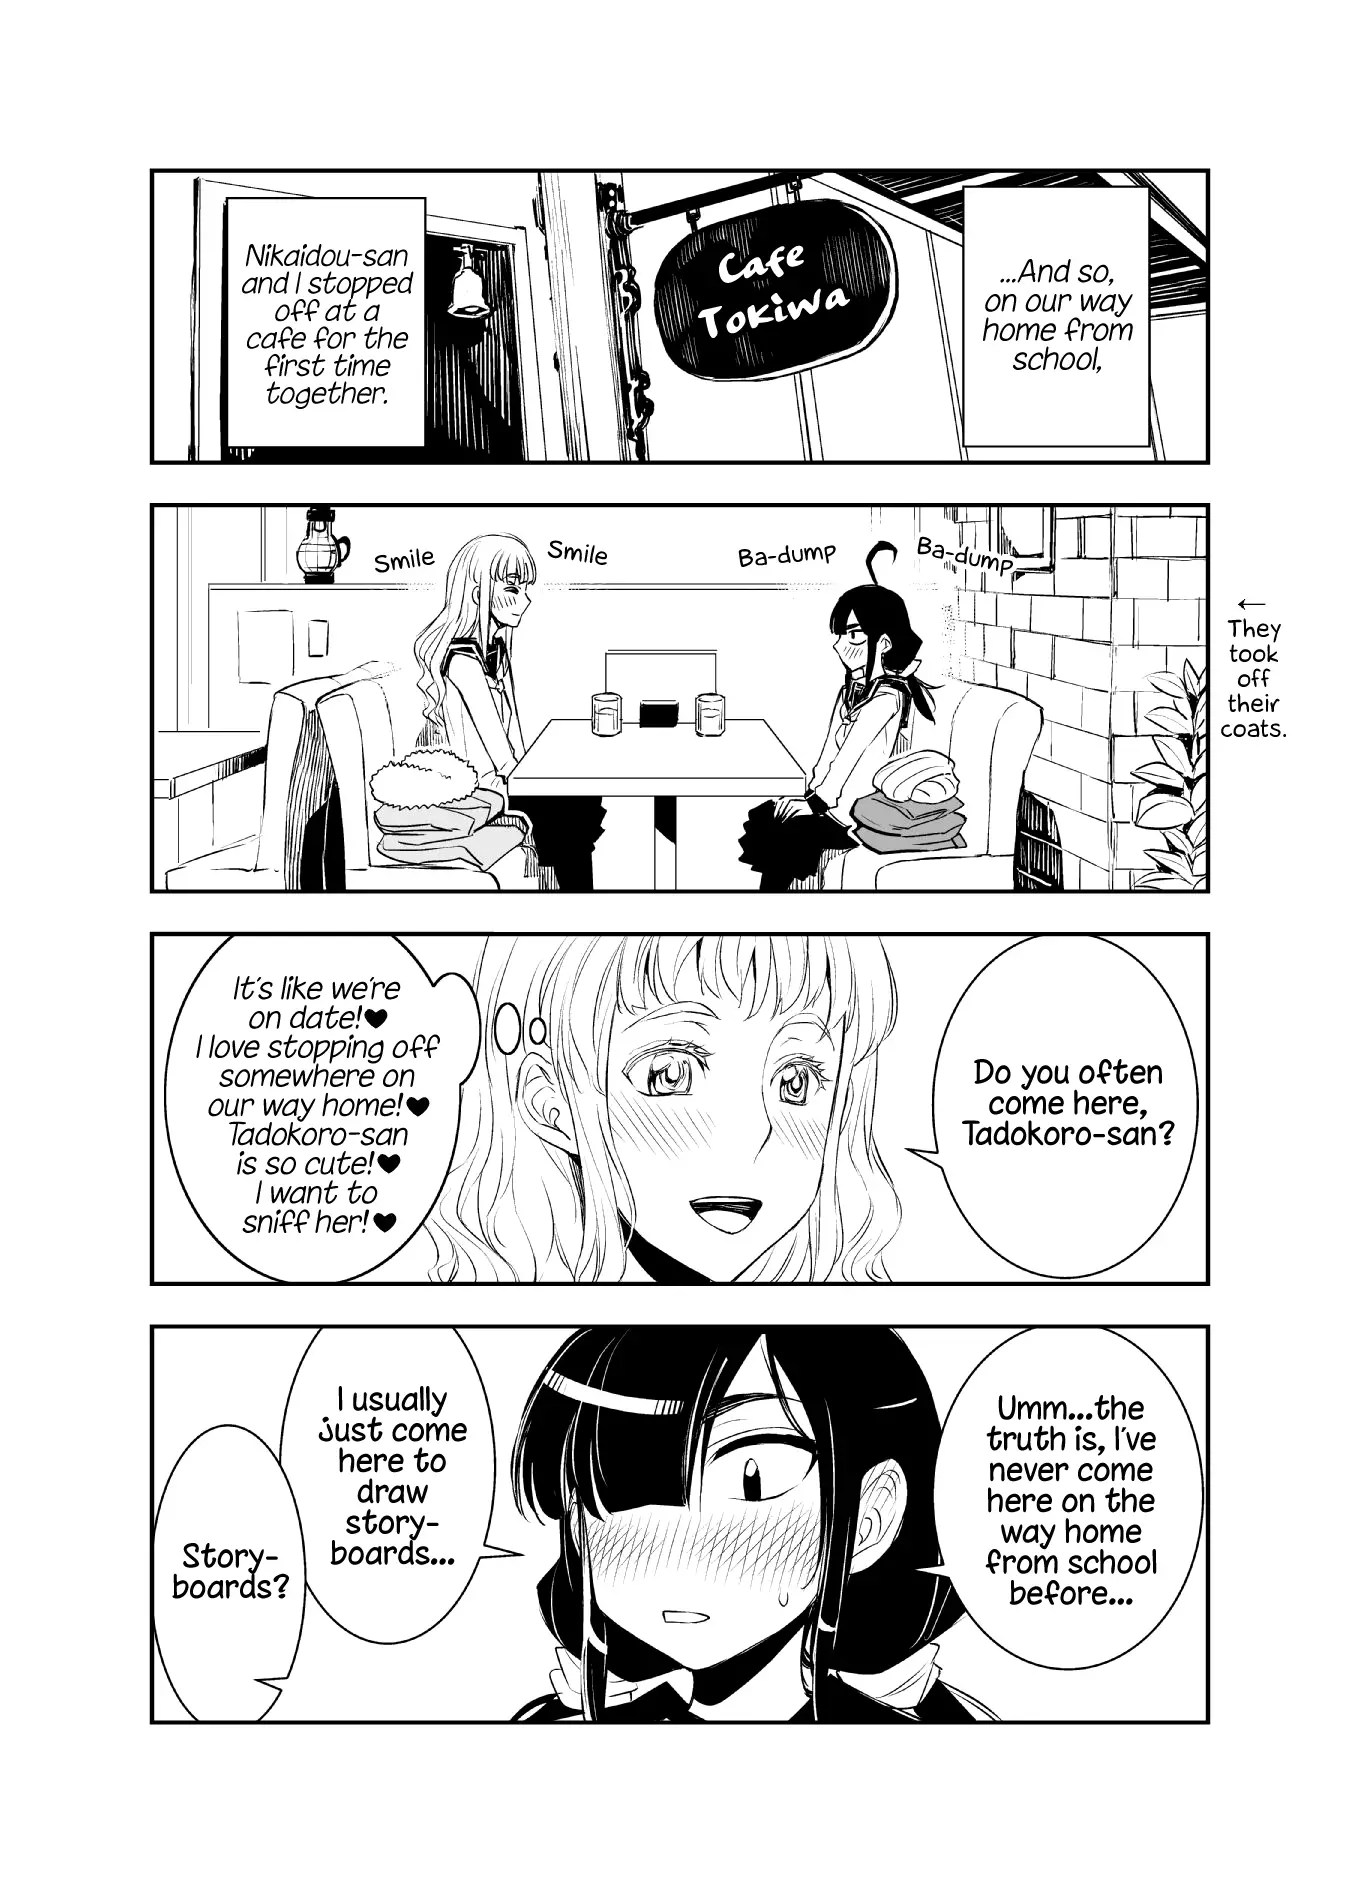 Tadokoro-san - 12 page 1